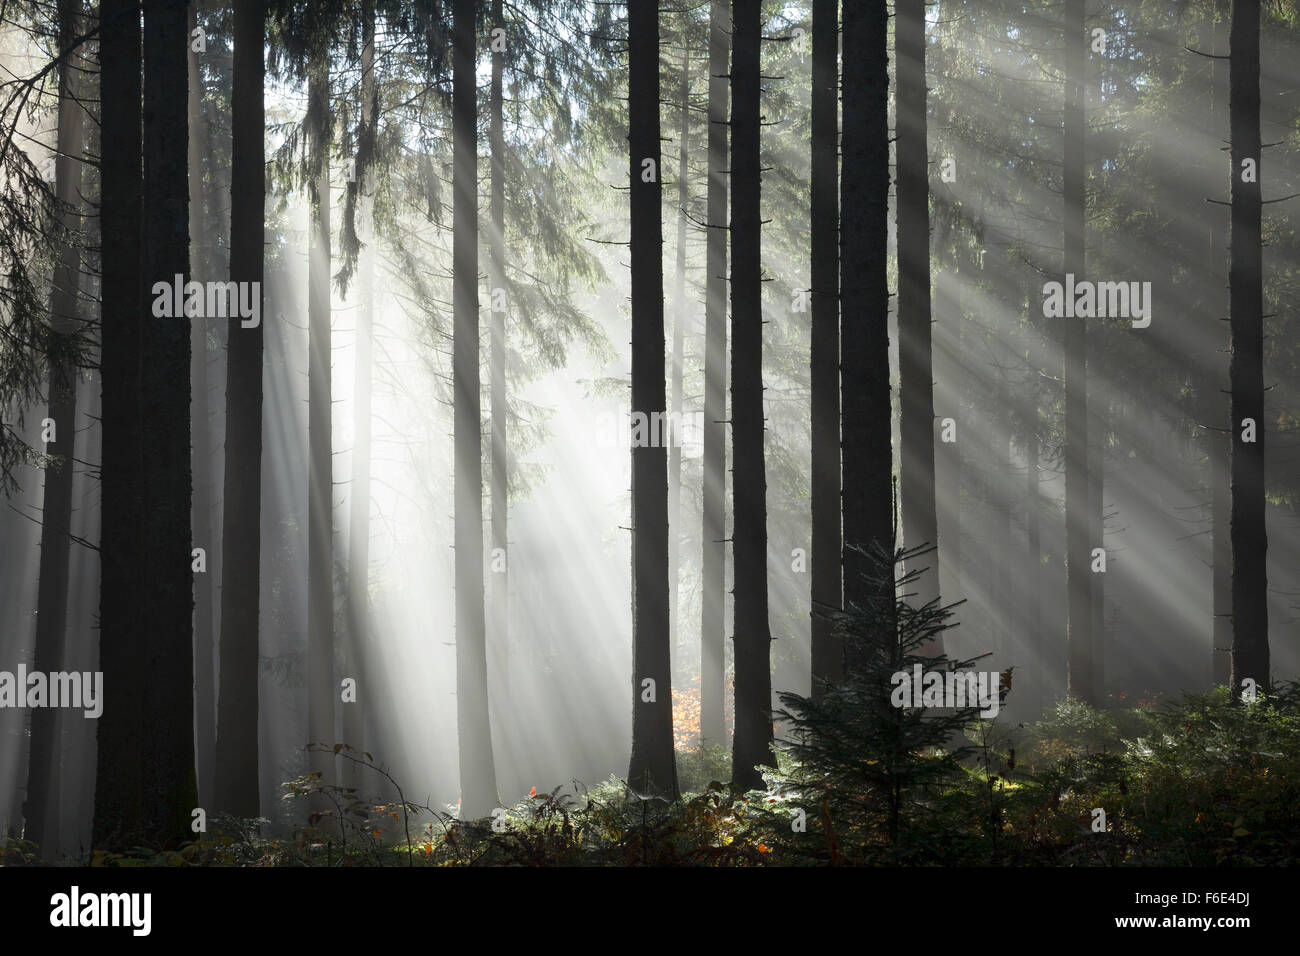 Rayons de soleil brillant à travers les arbres dans le brouillard, Epicéa (Picea sp.) forêt, automne, Hinterzarten, Forêt Noire, Bade-Wurtemberg Banque D'Images